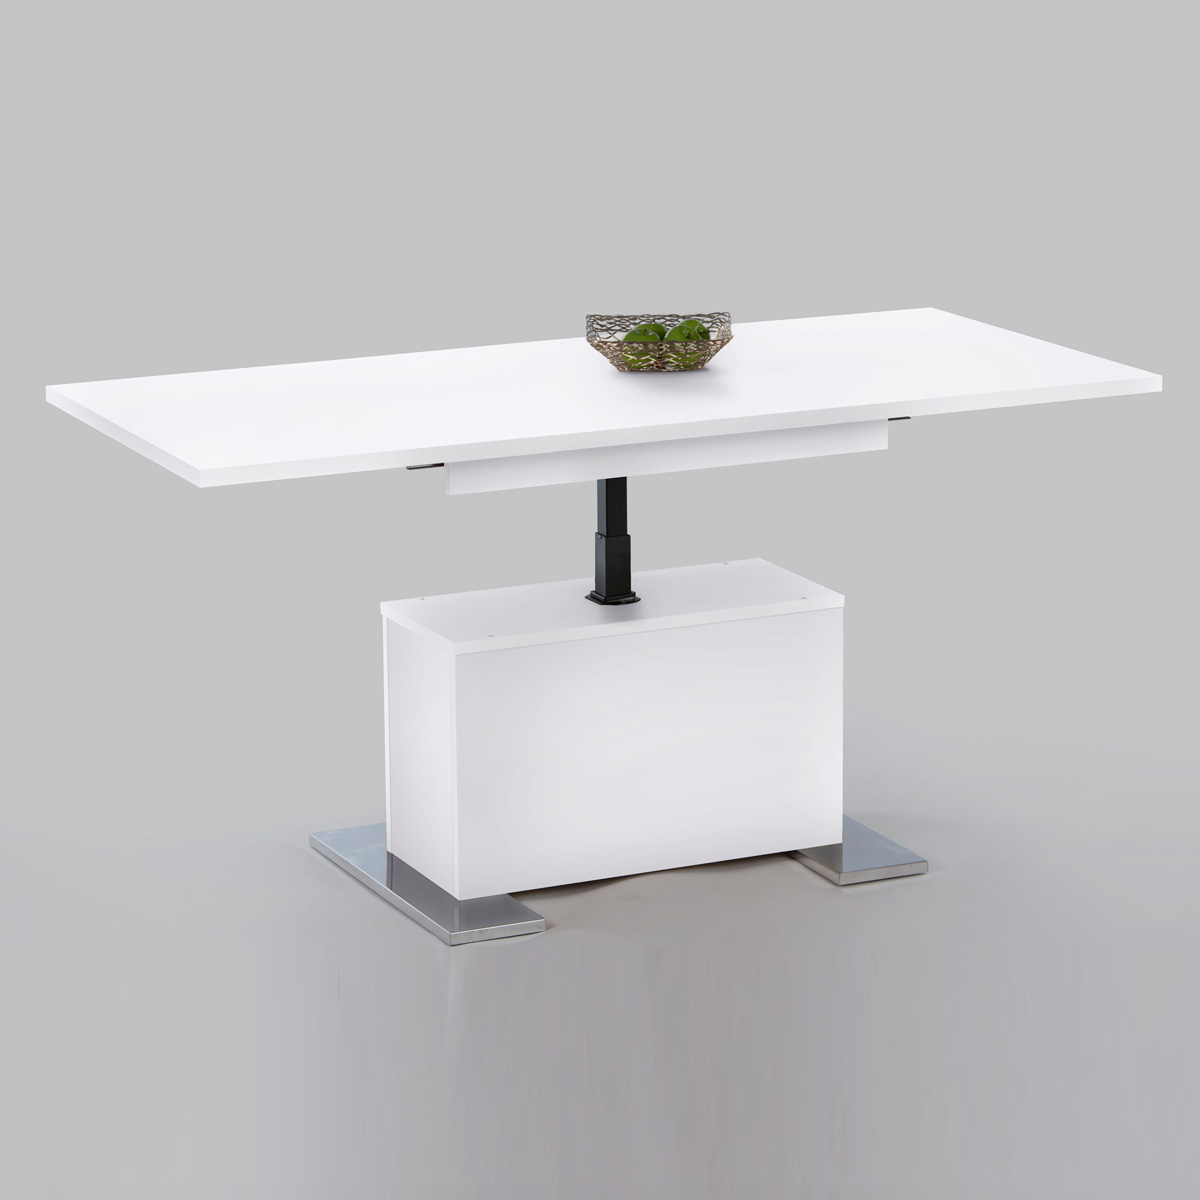 Höhenverstellbarer Tisch Ikea